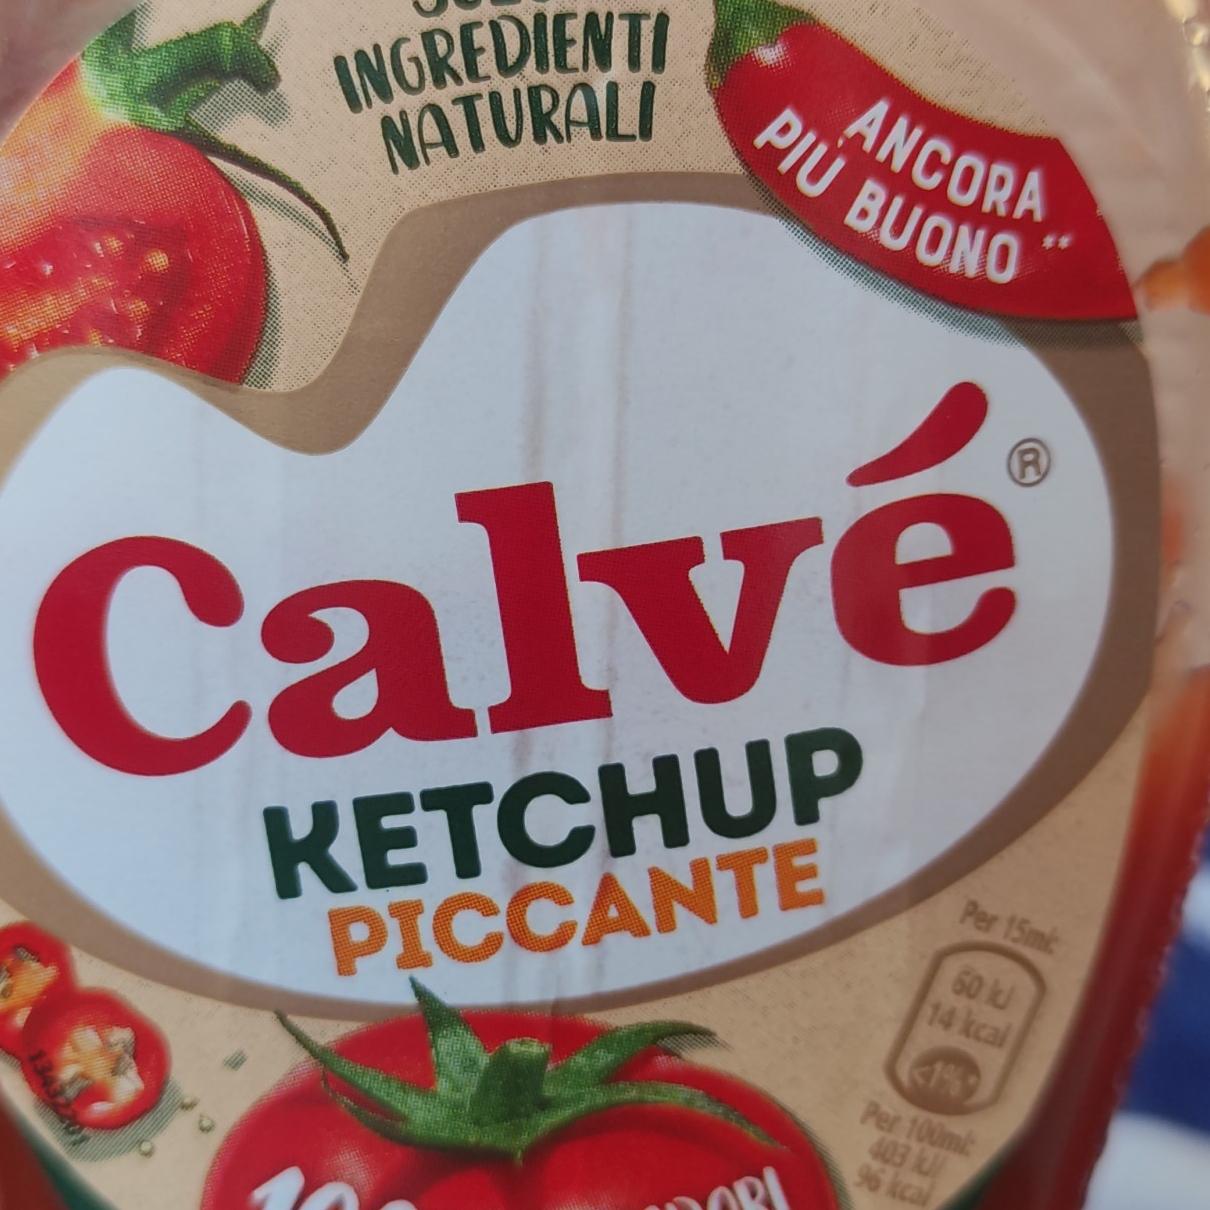 Fotografie - Ketchup piccante Calvé